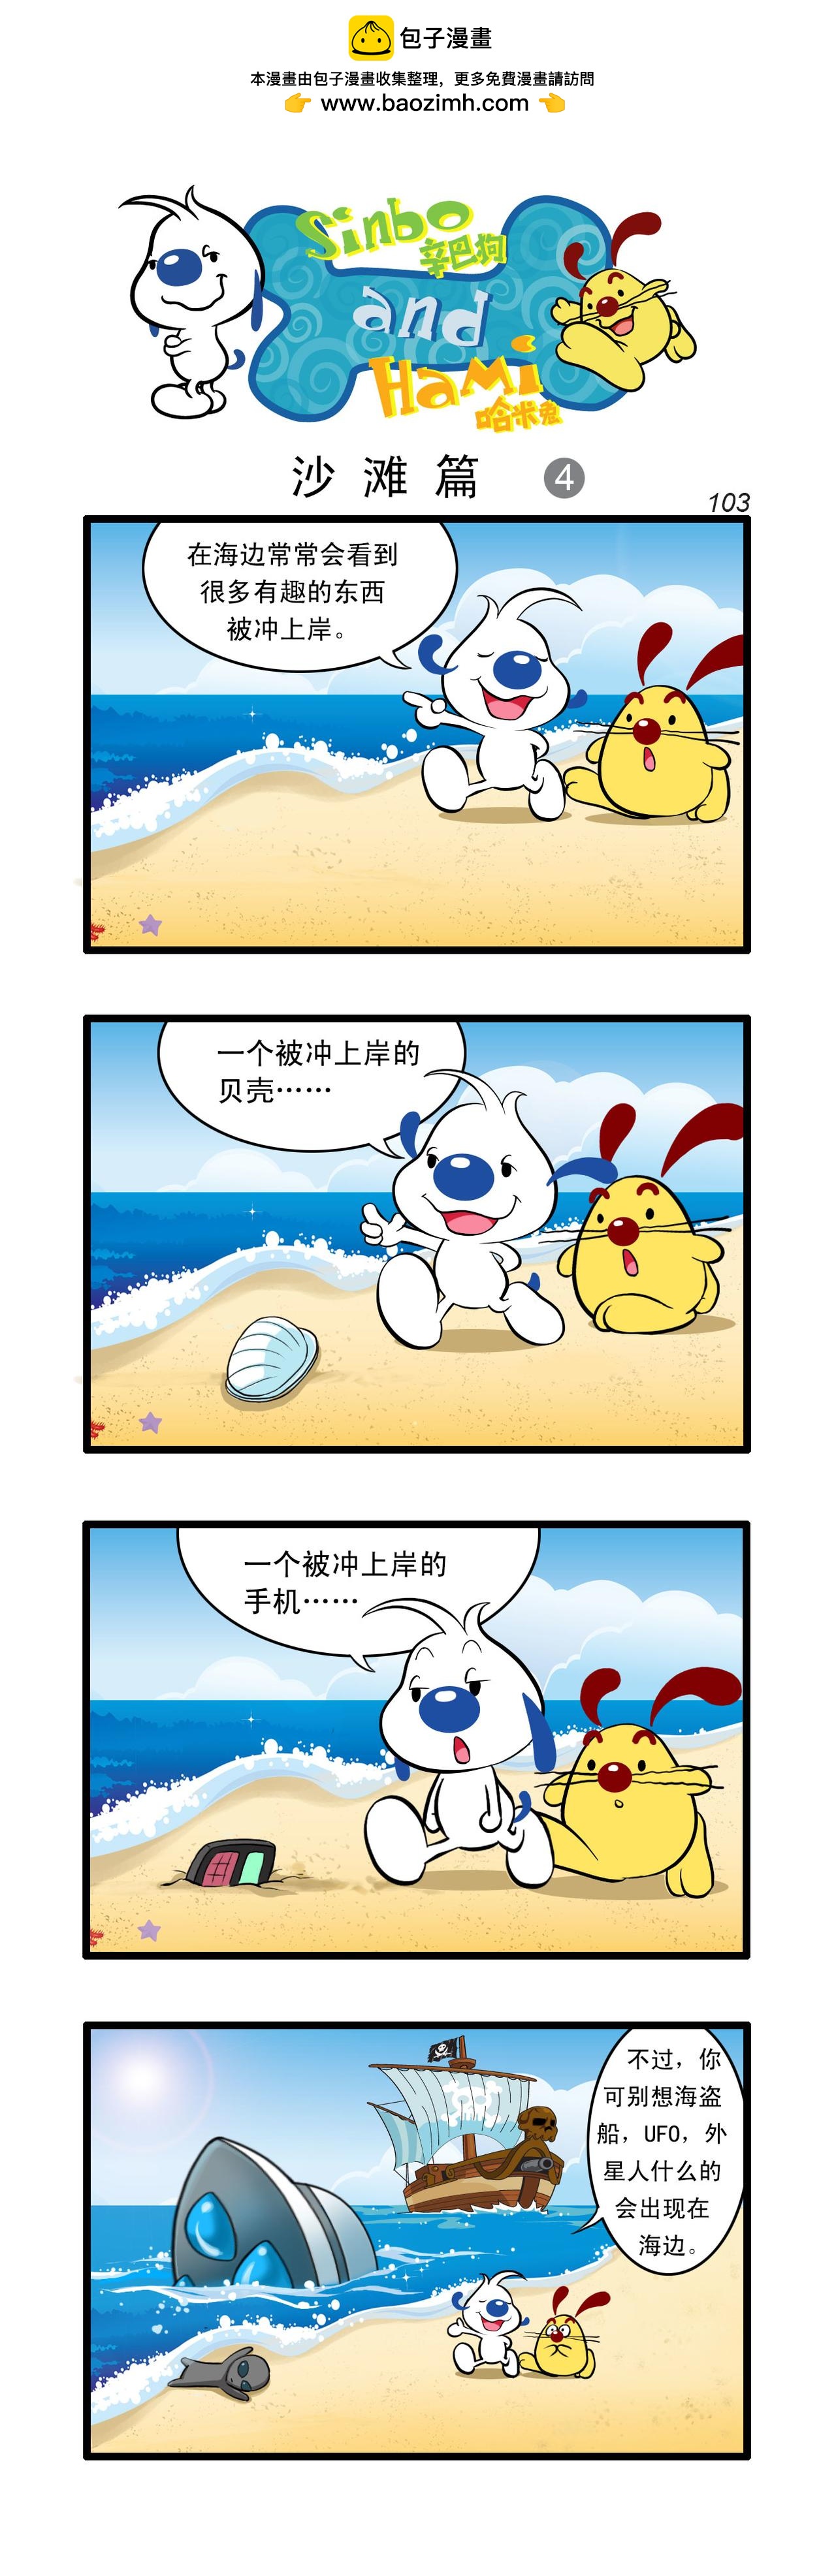 辛巴狗日常漫畫 - 多格30 - 1